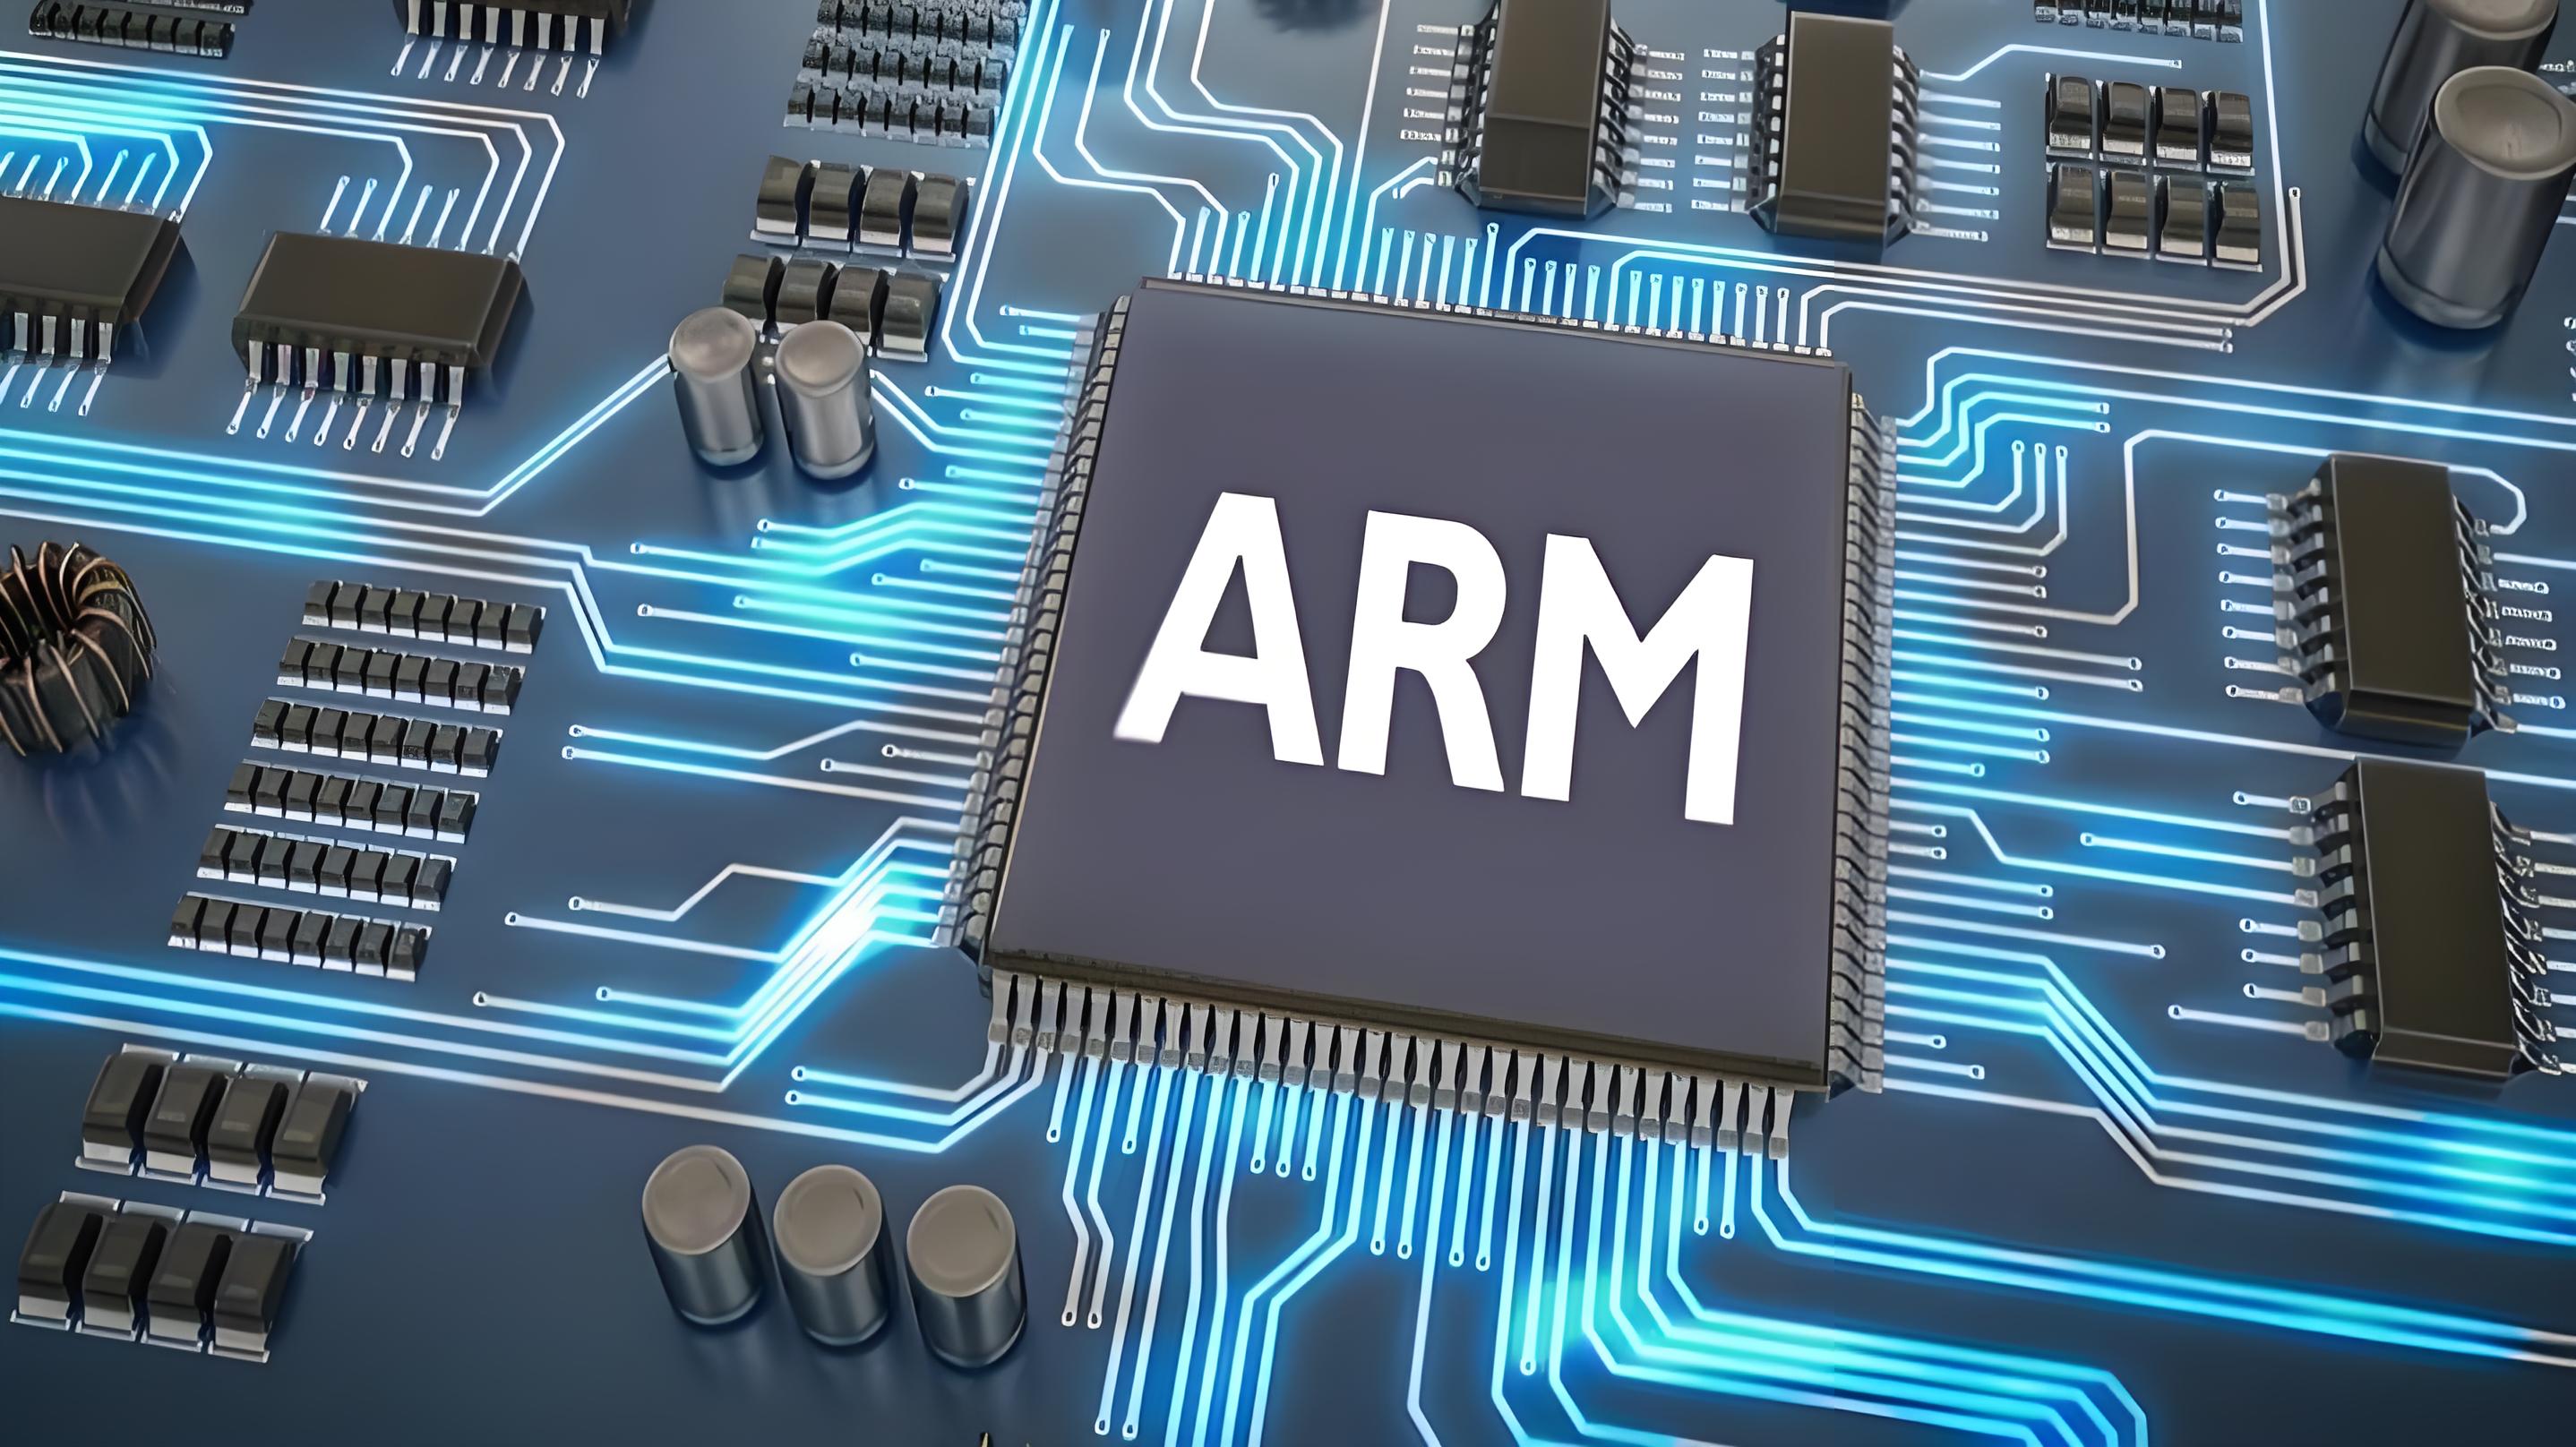 芯片设计公司arm开发 ai 芯片，计划2025年开始大规模生产